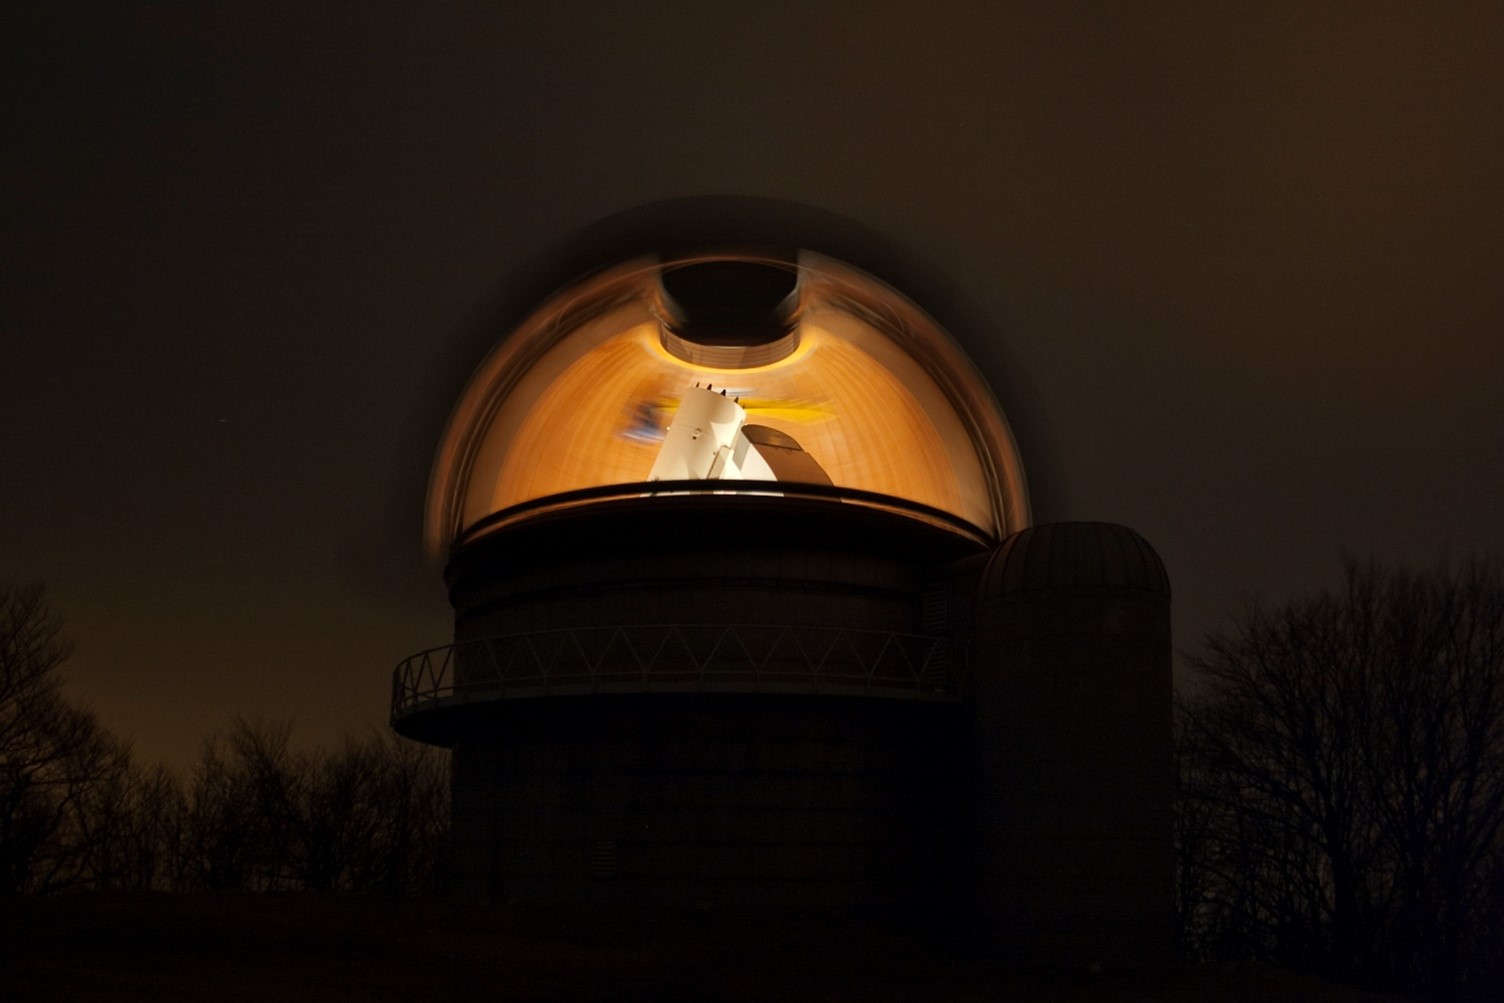 Transzparens csillagászat. A hosszú expozíciós felvételen a kupola körbe forgatásával láthatóvá válik minden, ami előtt a nyitott kupolarés elhaladt, így a belül megvilágított teljes kupola és a Schmidt távcső.